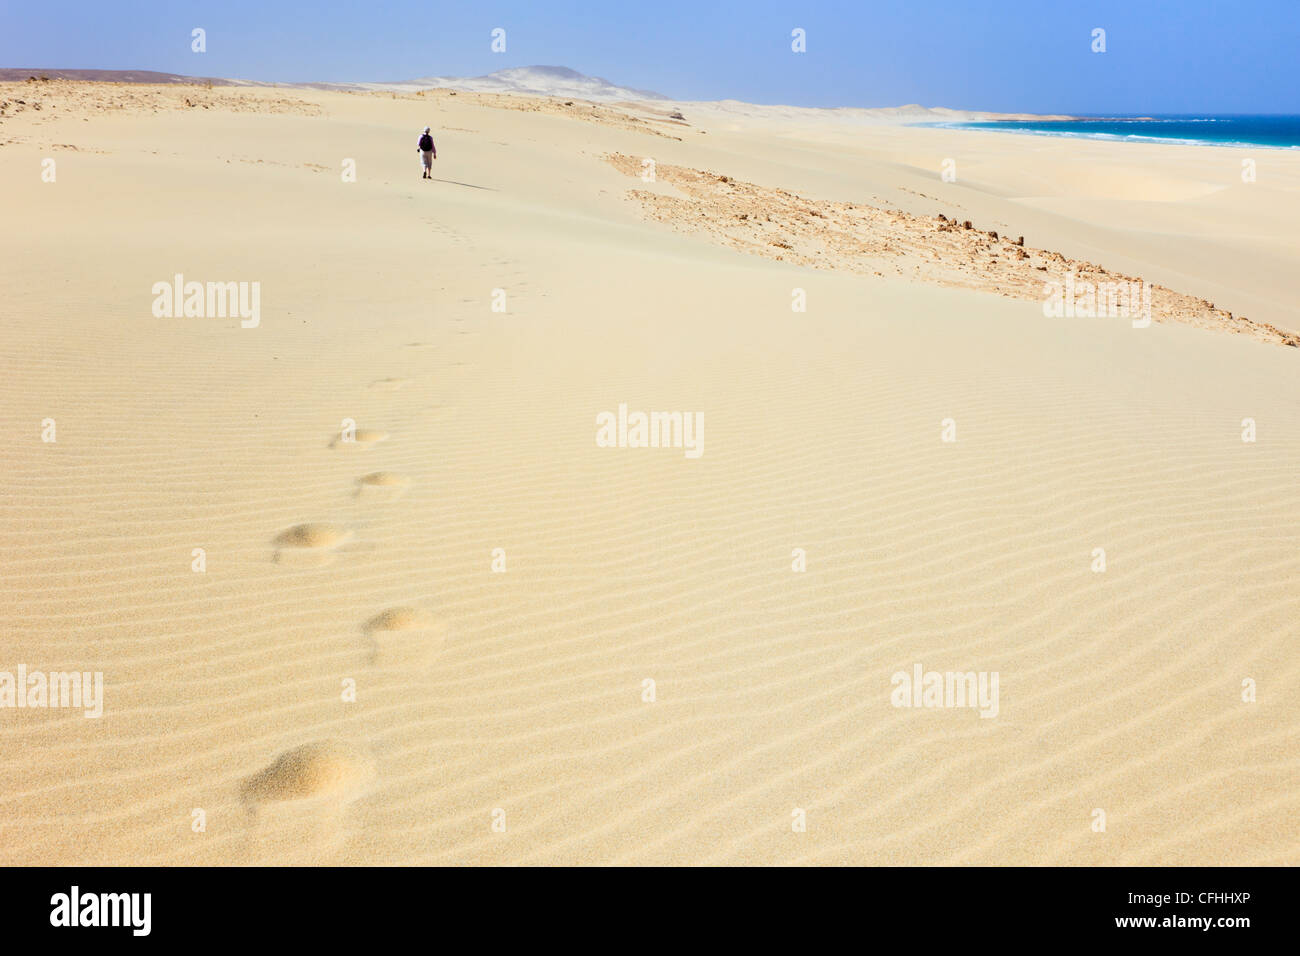 Ein entfernter Mensch, der auf Sanddünen spaziert und auf dem weißen Sandstrand von Praia de Chaves, Rabil, Boa Vista, Kapverdische Inseln Fuß gesetzt hat Stockfoto